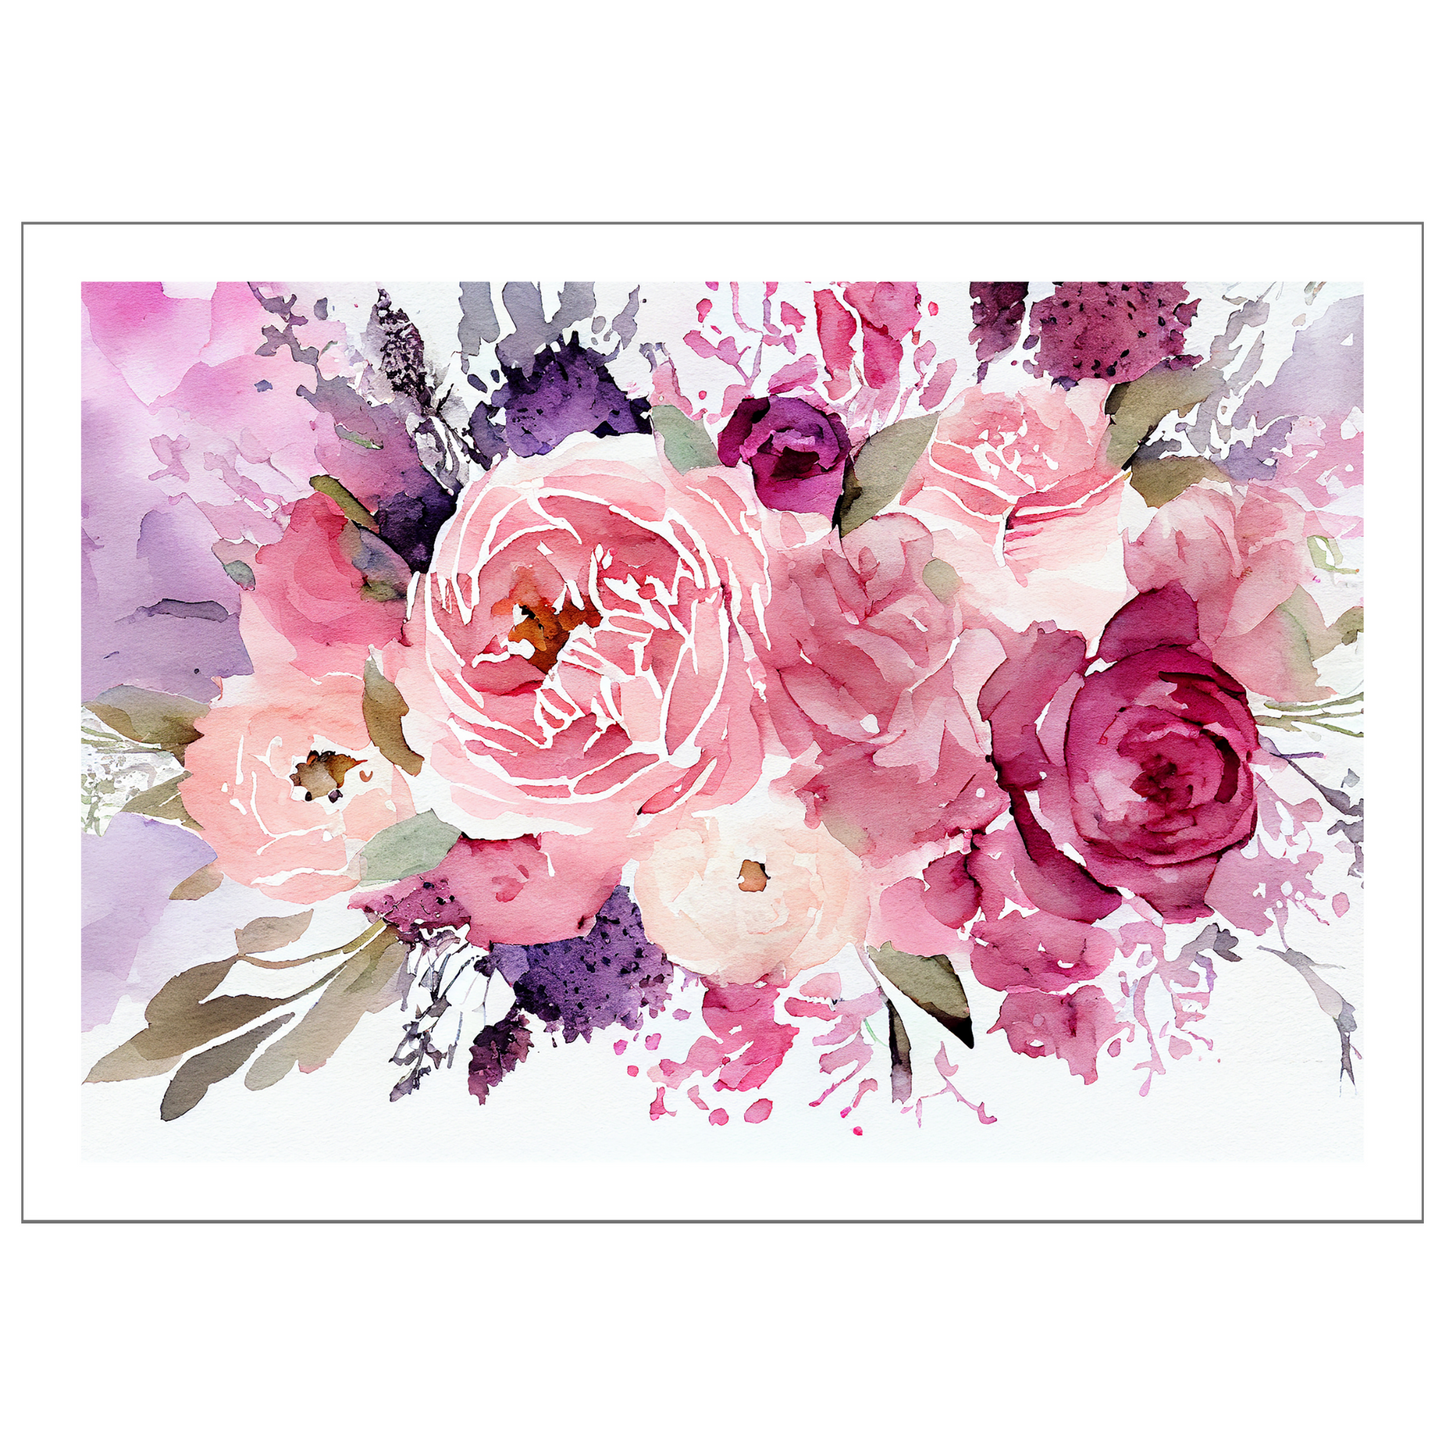 Blomstermotiv i vannfarger i nyanser burgunder, rosa og lillan. Plakaten har hvit dekorativ kant rundt.